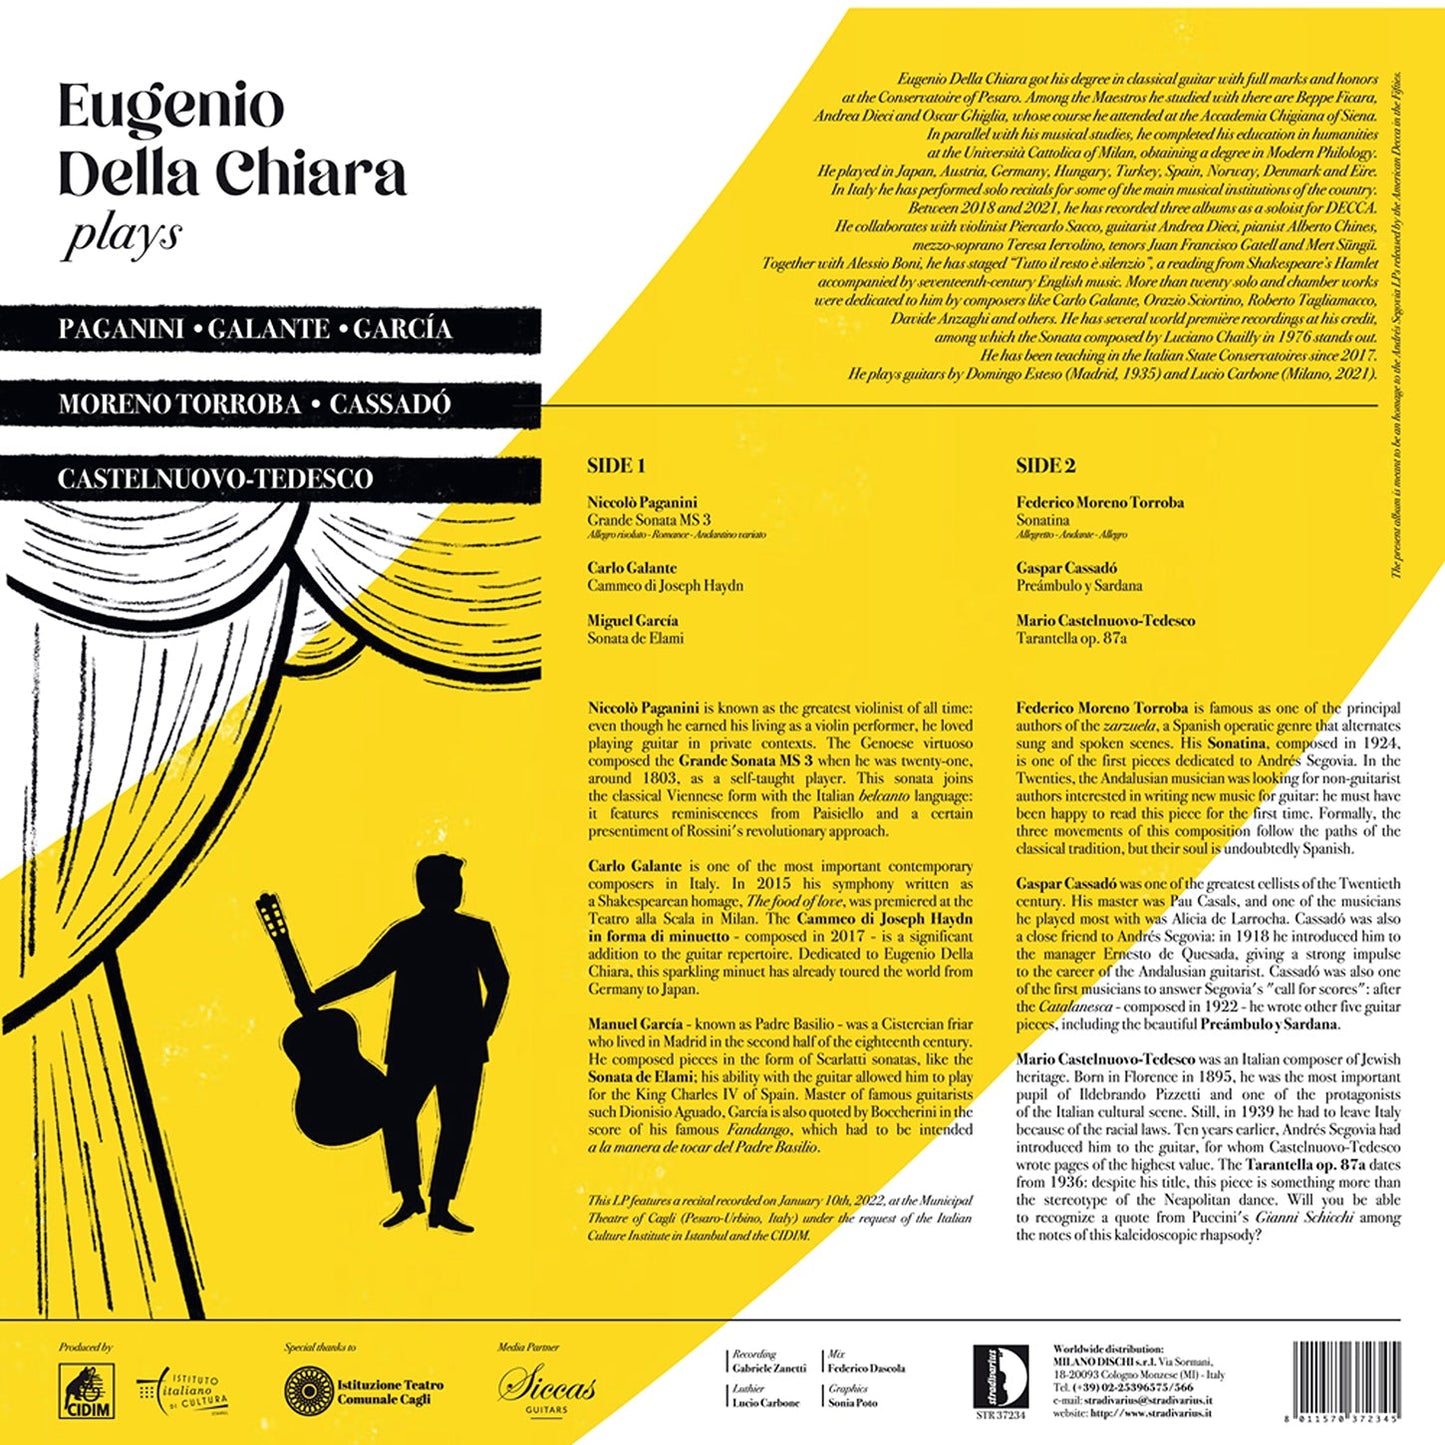 Eugenio Della Chiara Plays Paganini, Galante, Garcia, Torrob